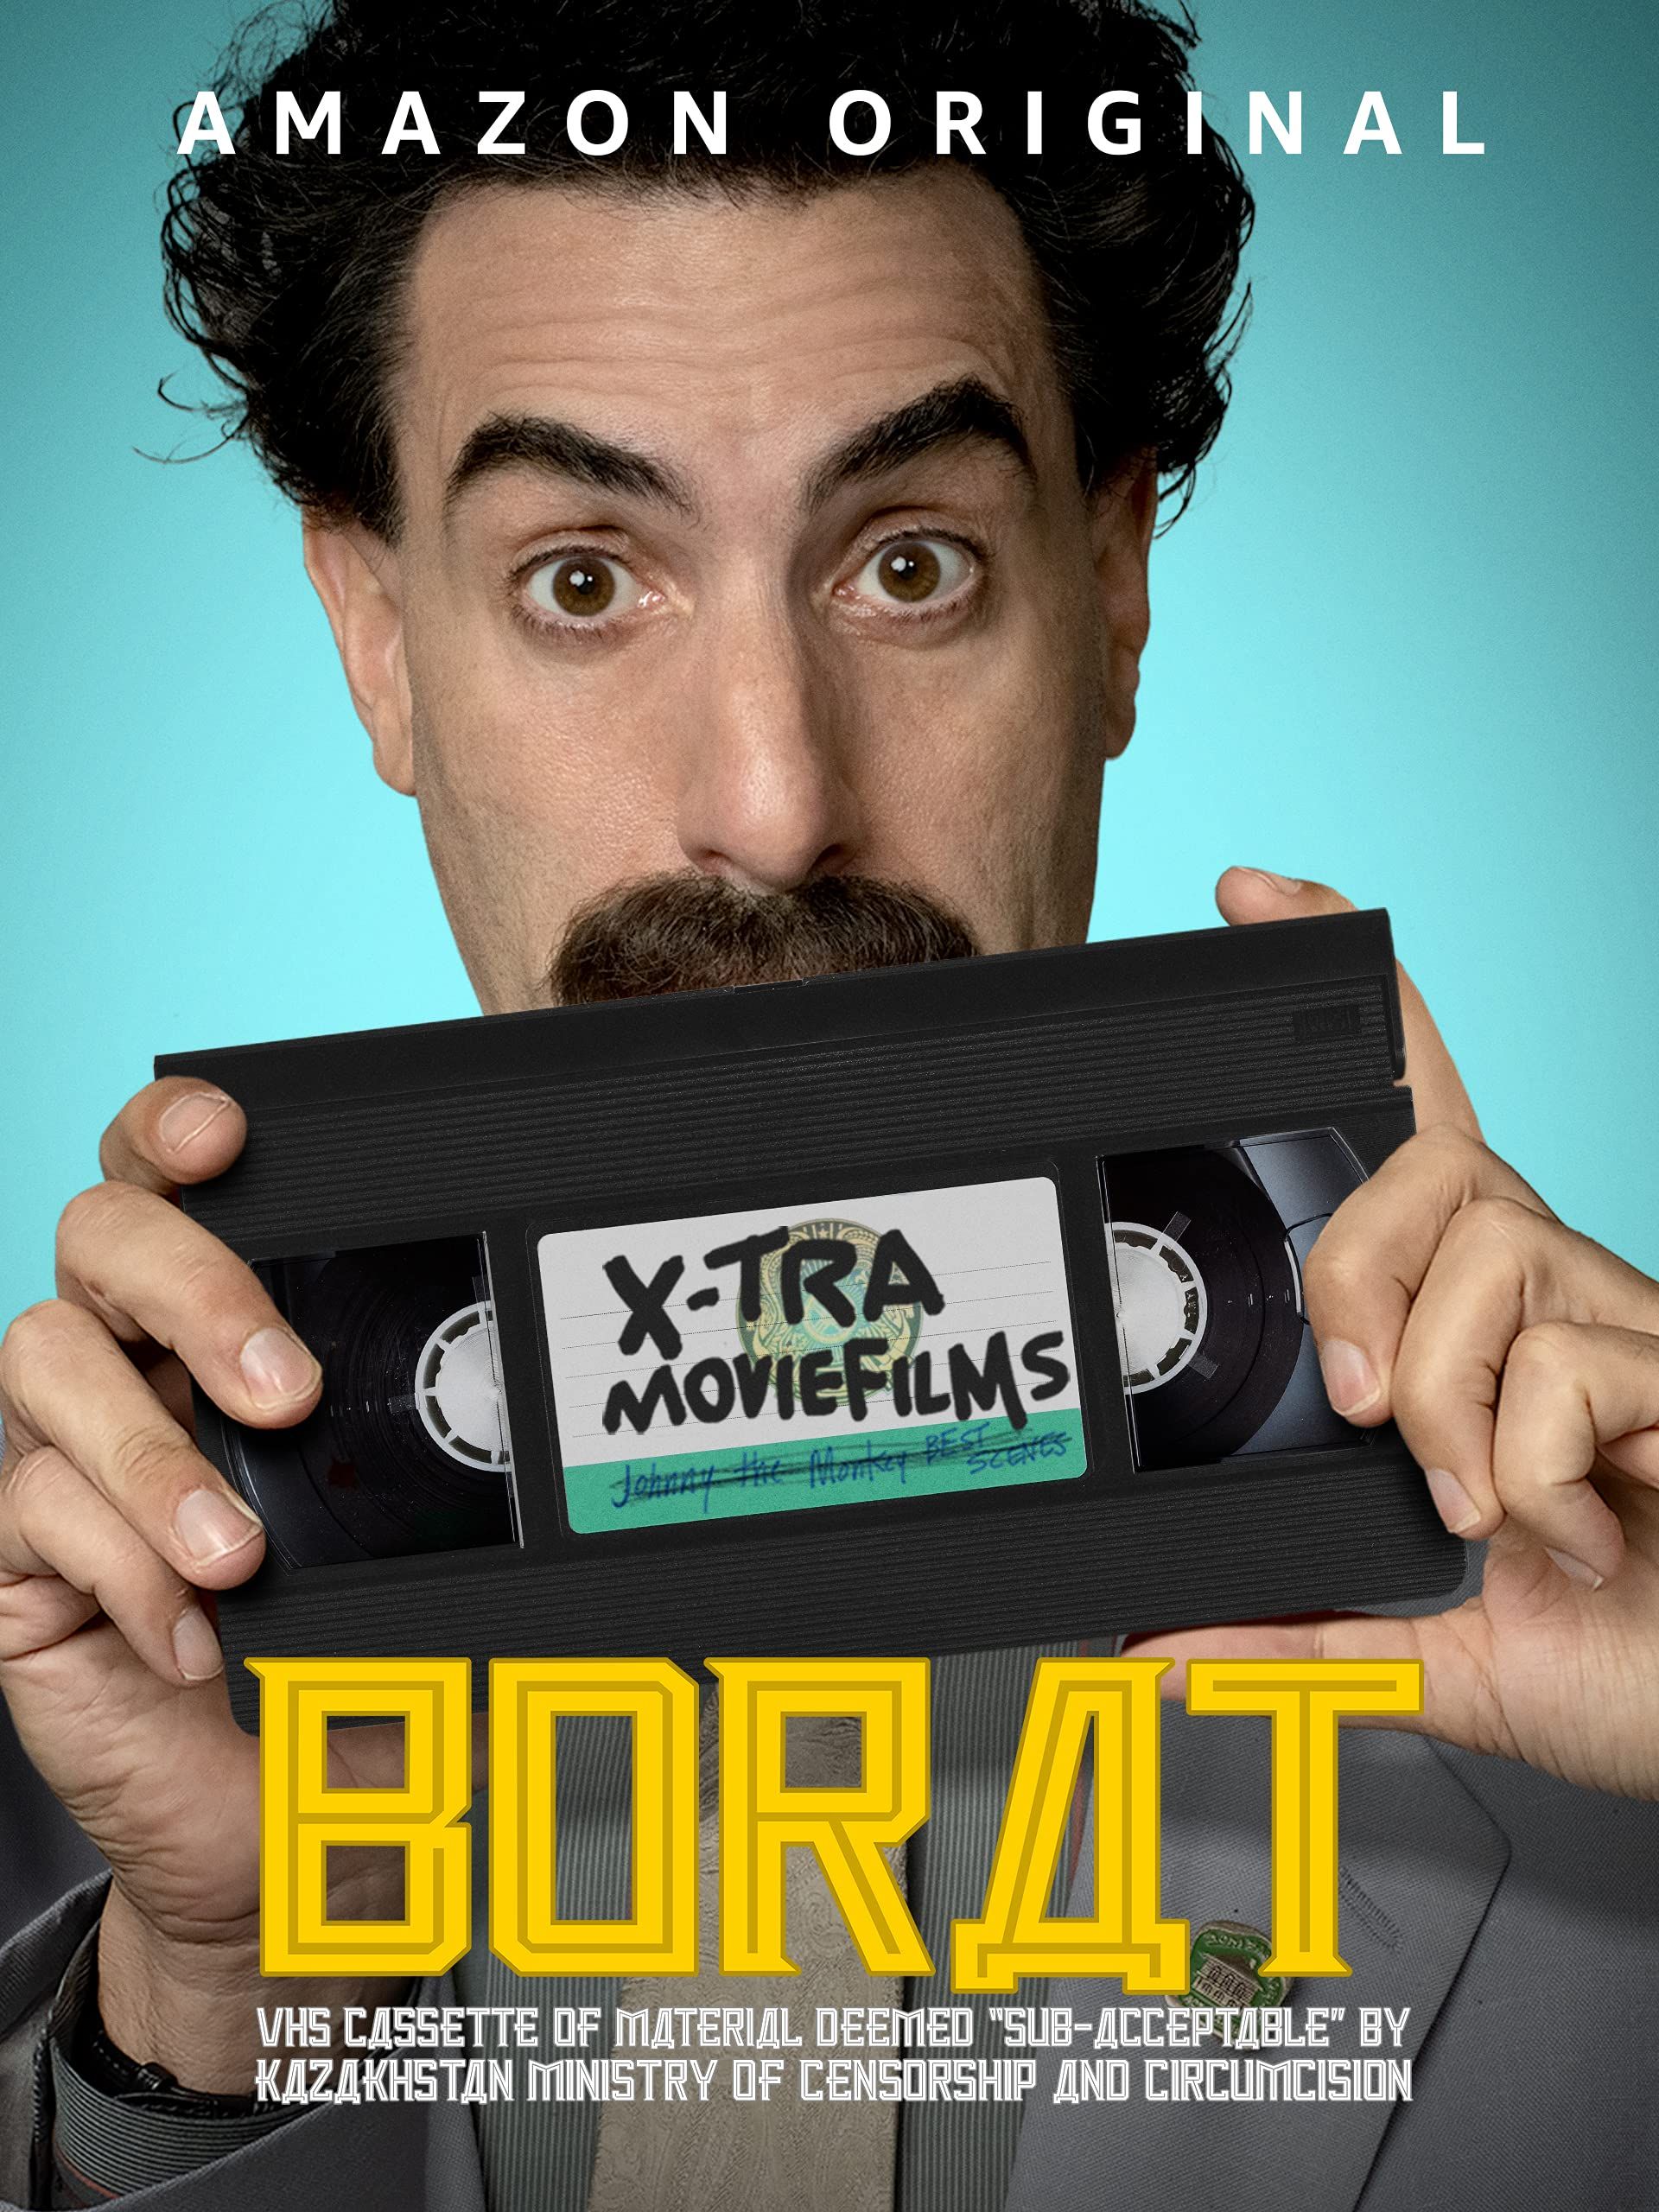 Borat: VHS kazetta a Kazah Cenzúra és Körülmetélés Minisztériuma által „kvázi elfogadhatóságú”-ra minősített anyagokkal online film